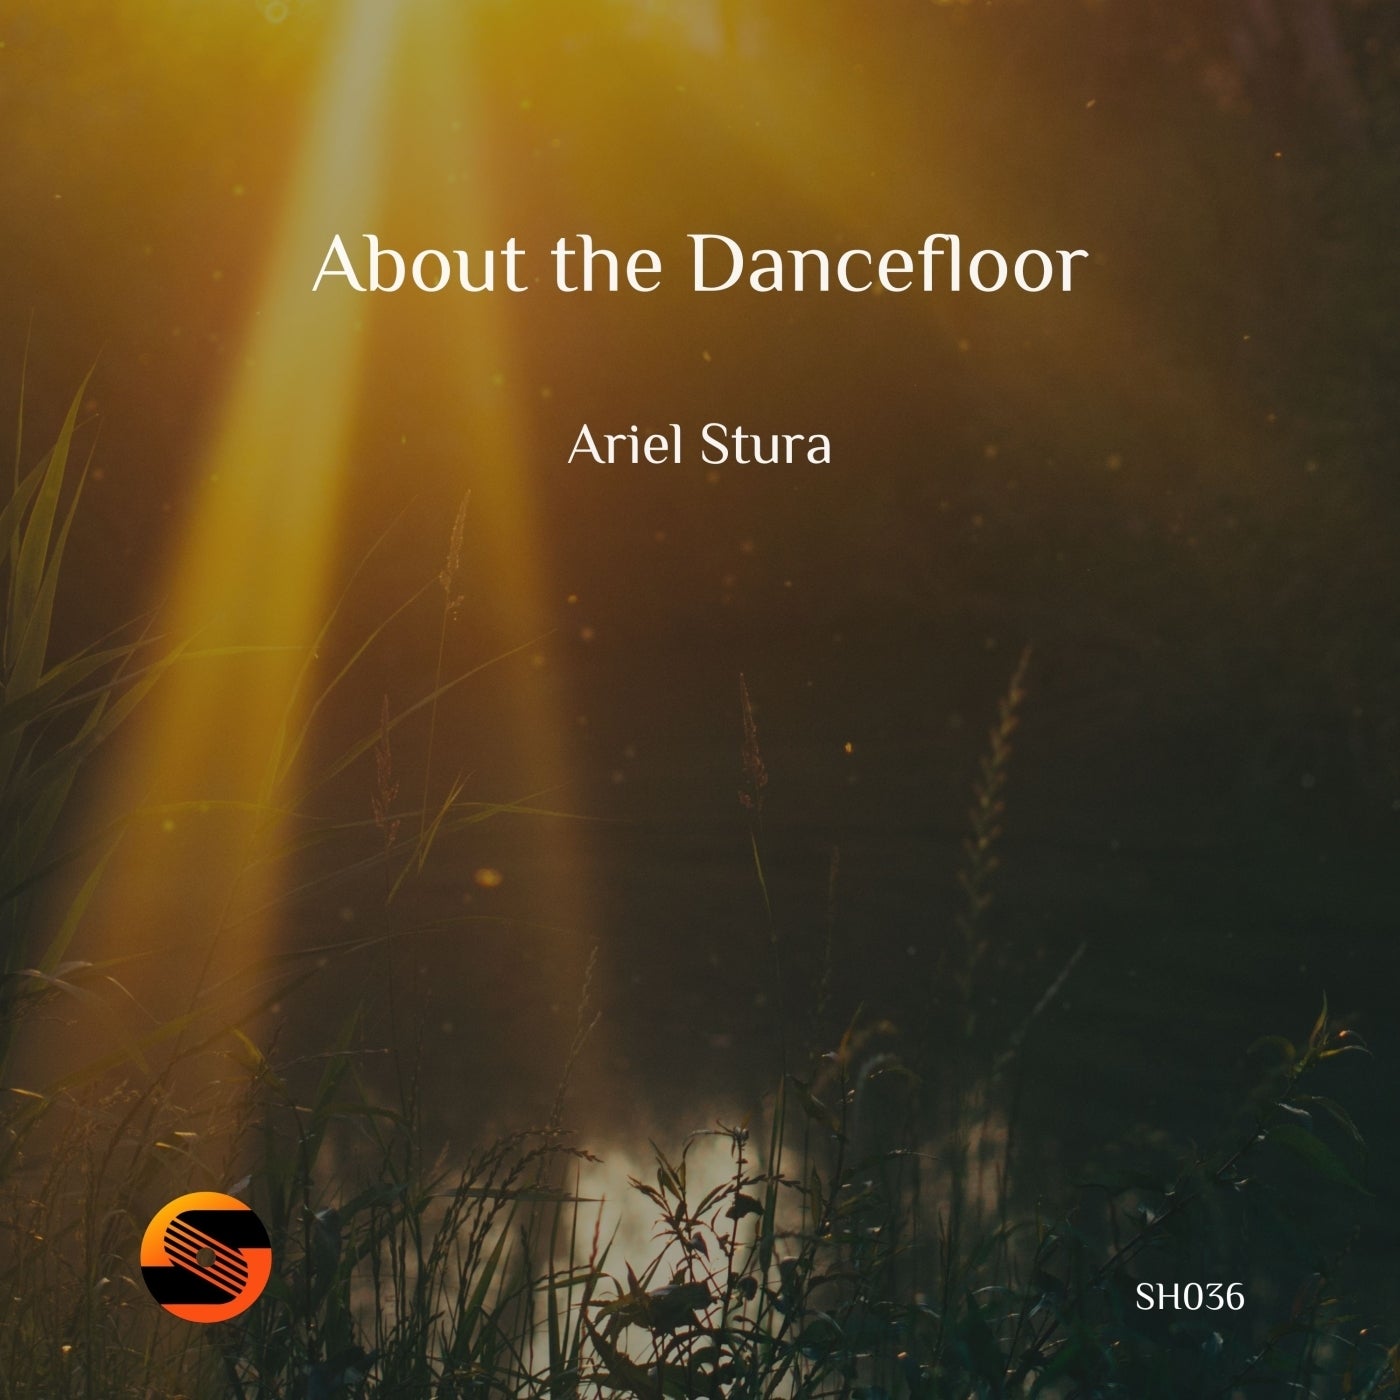 About the Dancefloor